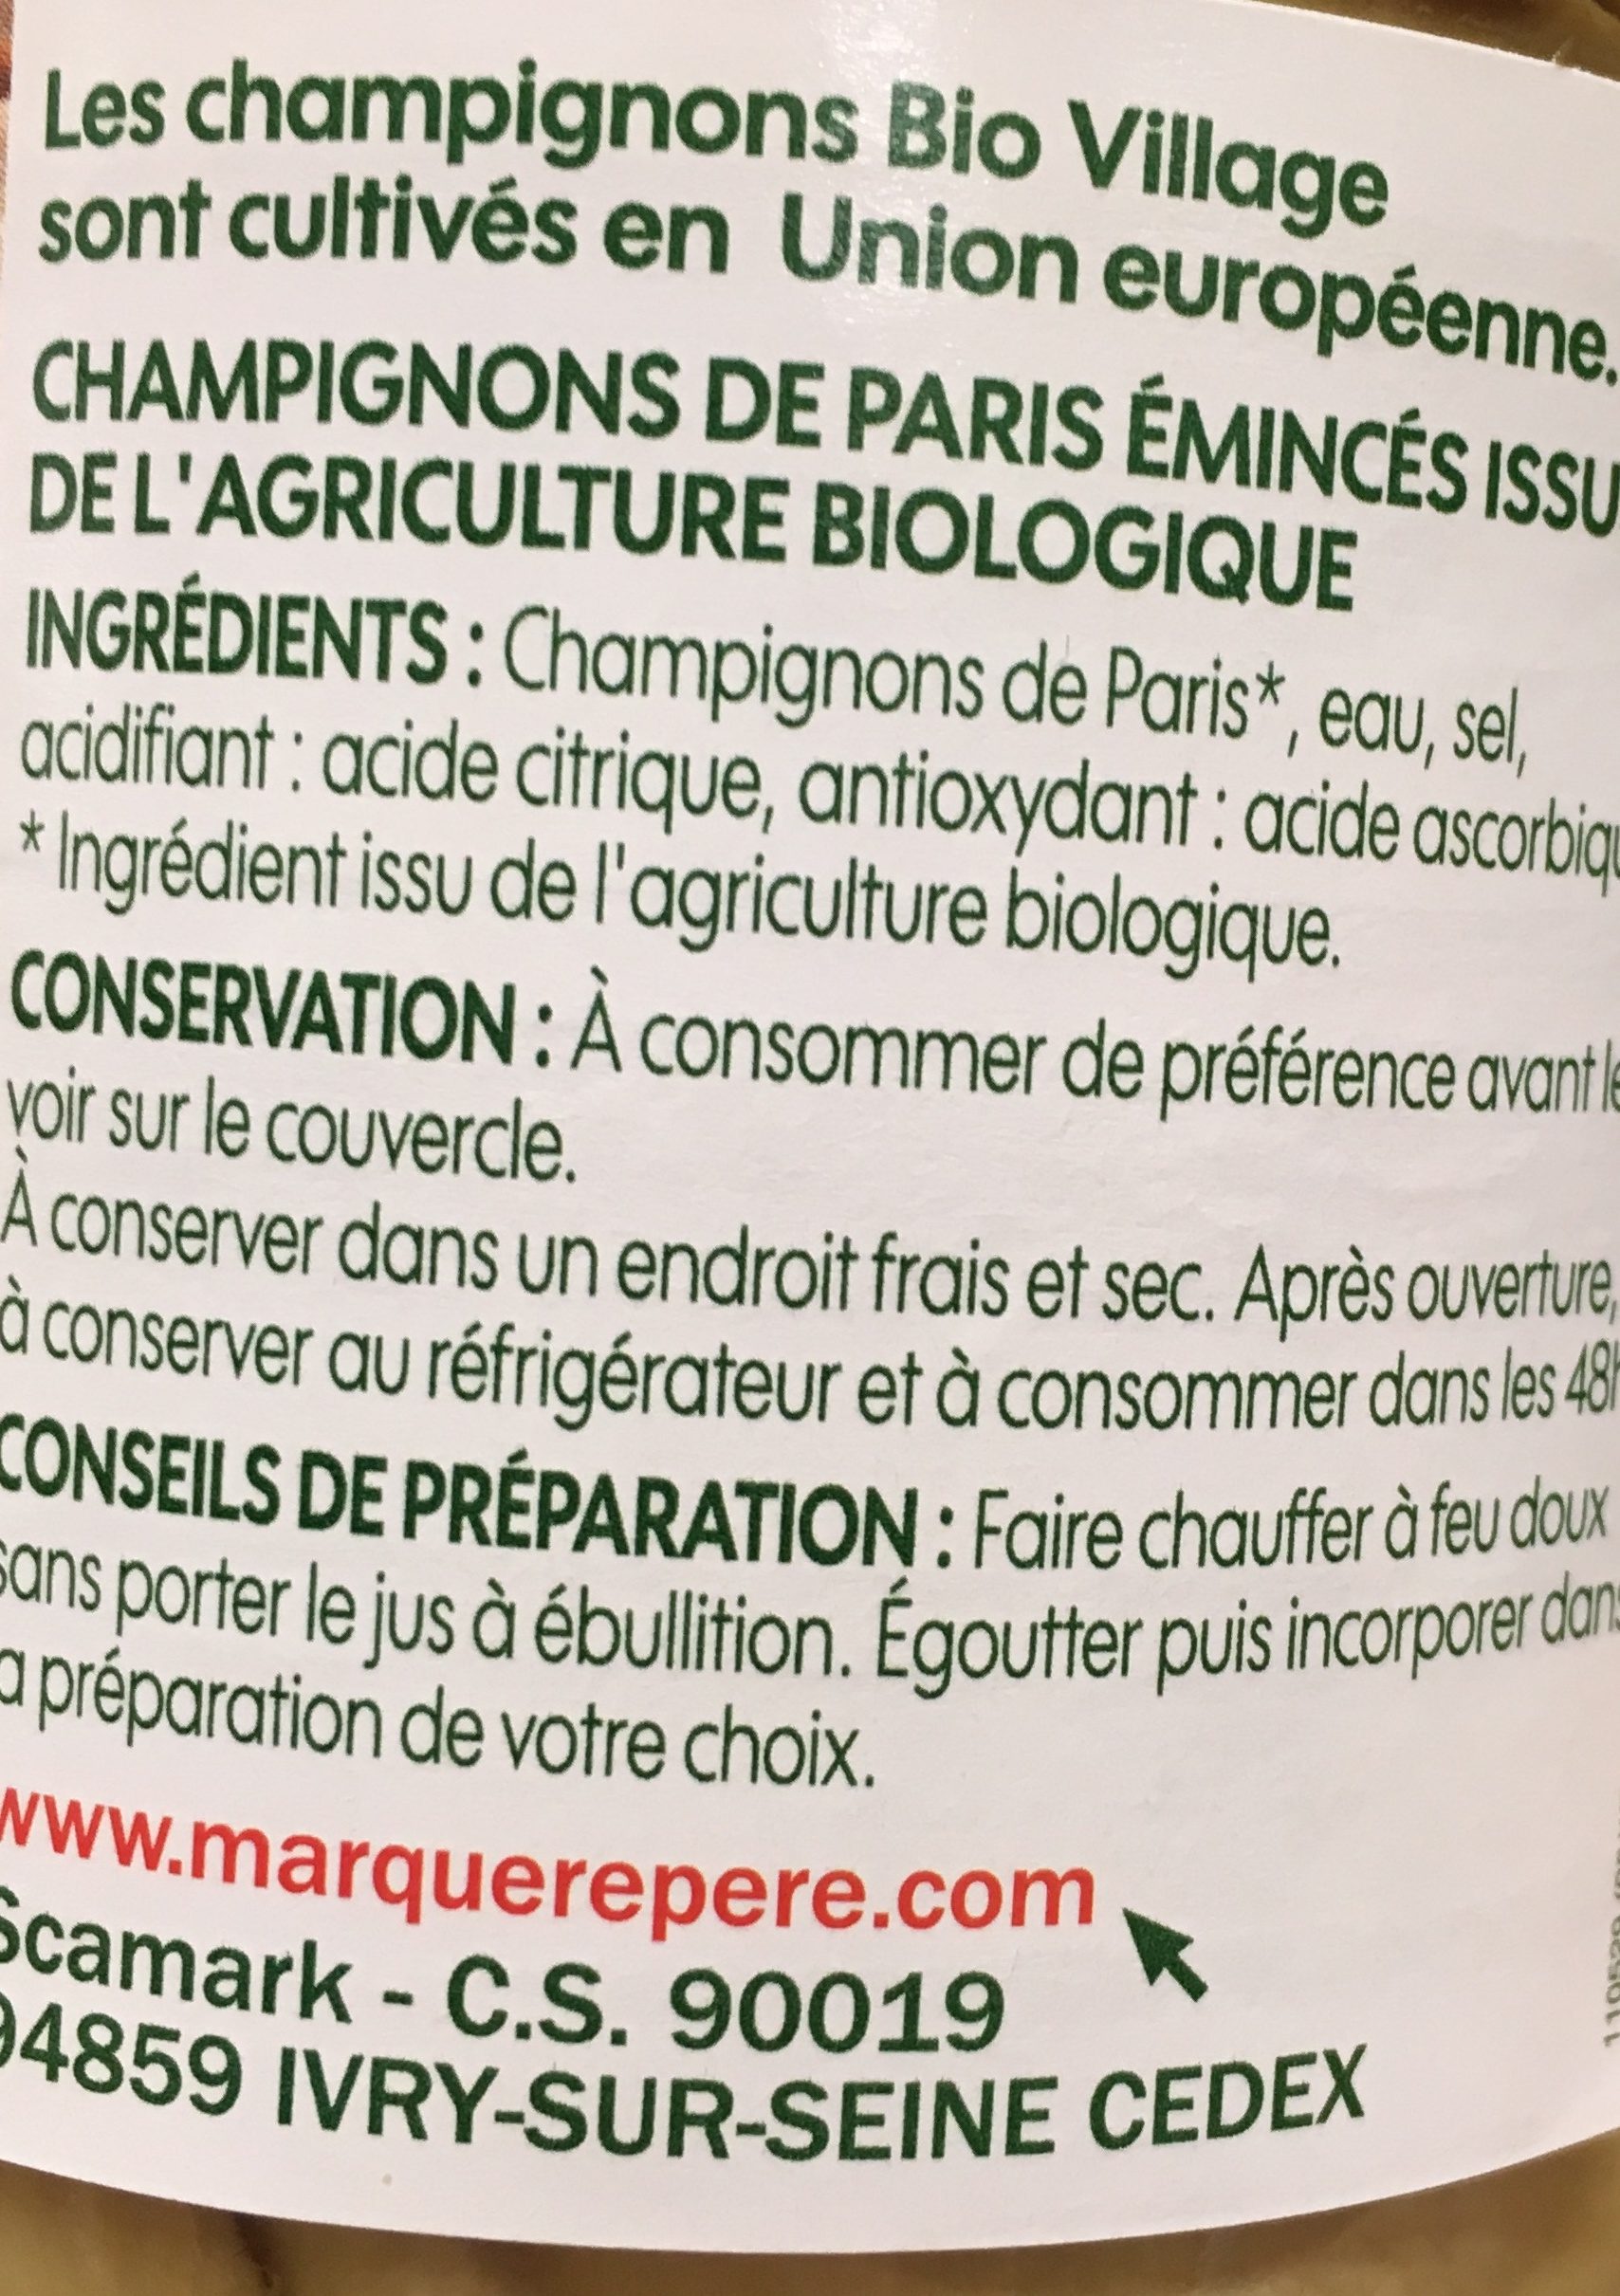 Champignons de Paris émincés bio - Ingrédients